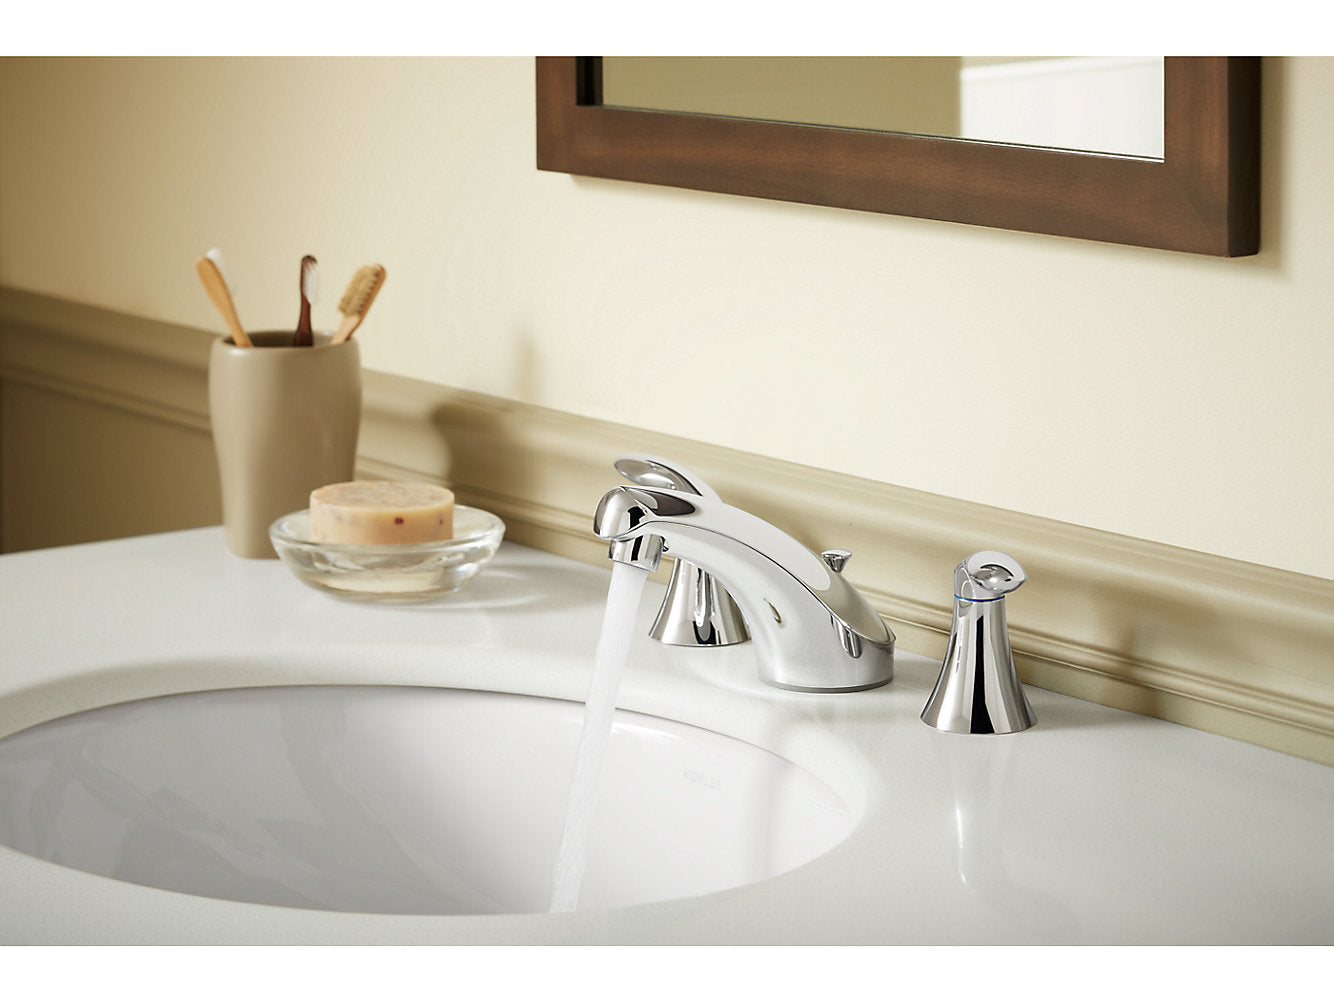 Kohler Caxton Oval 17" x 14" Undermount Bathroom Sink With Overflow - Biscuit